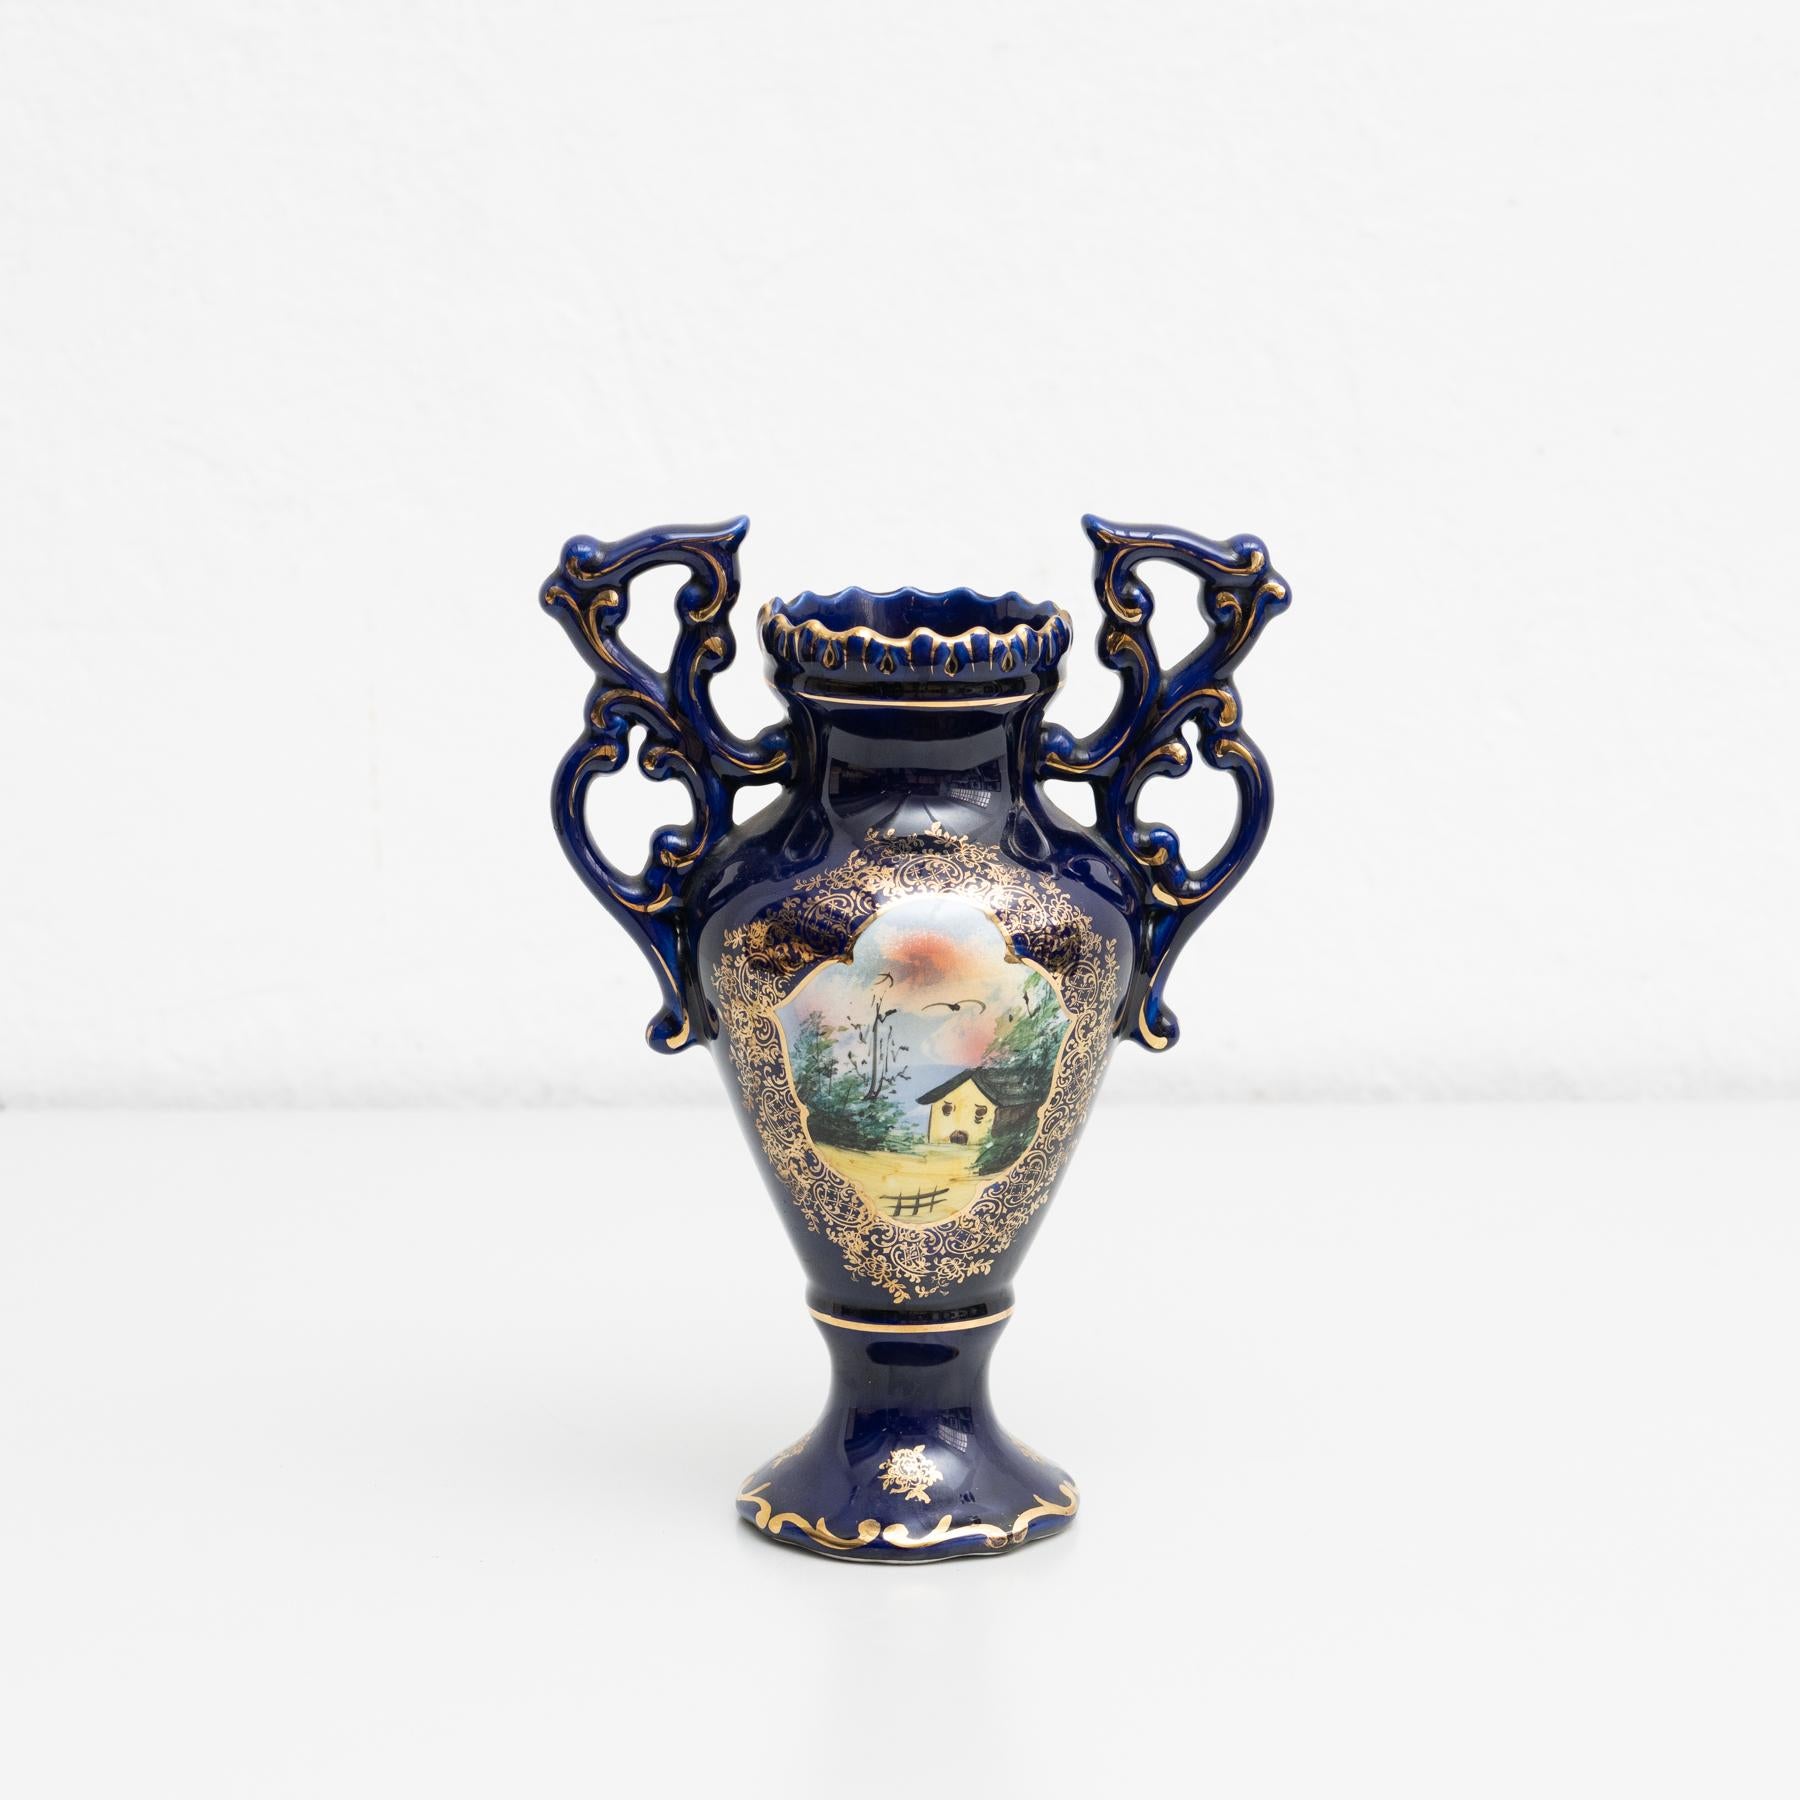 Vase Isabelline en porcelaine peint à la main dans le style Serves. Joliment décorée avec une belle scène sur la face avant.

Fabriqué par un fabricant inconnu en France, début du 20e siècle.

En état d'origine, avec une usure mineure conforme à